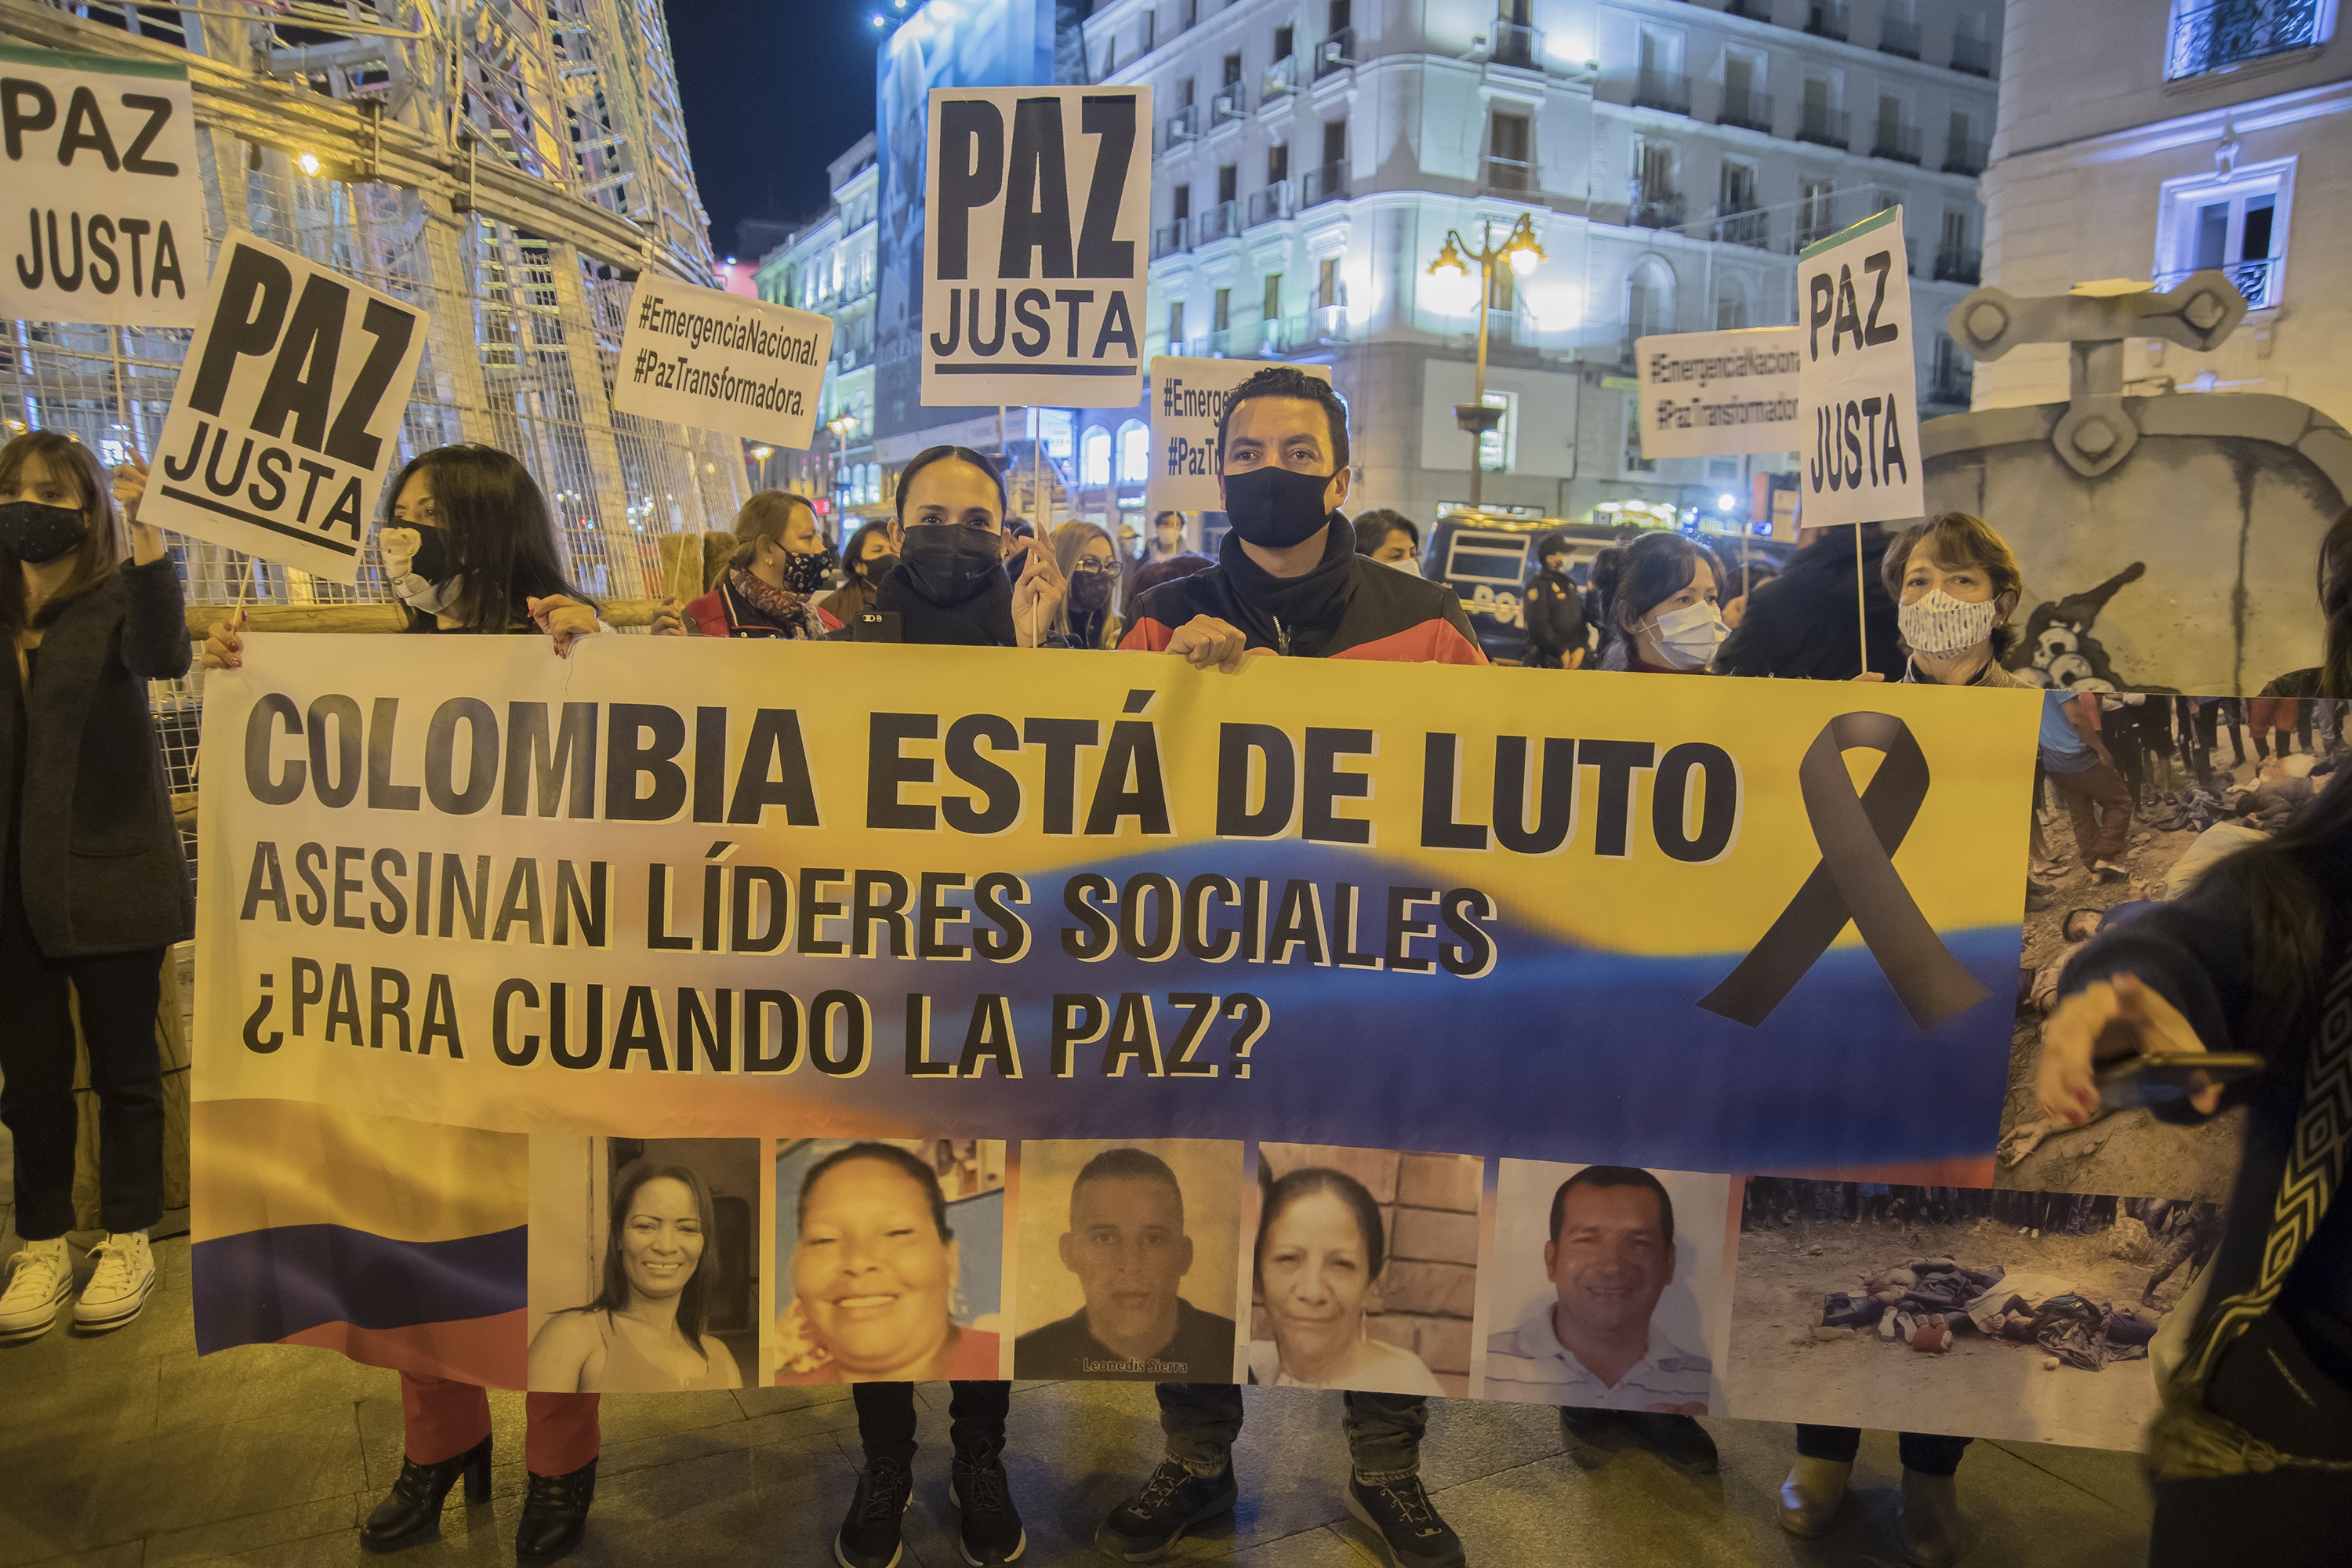 21/11/2020 Manifestación celebrada en Madrid, España, para denunciar el asesinato de líderes sociales en Colombia y la impunidad que existe en favor de sus responsables.
POLITICA SUDAMÉRICA COLOMBIA LATINOAMÉRICA INTERNACIONAL
ALBERTO SIBAJA / ZUMA PRESS / CONTACTOPHOTO
